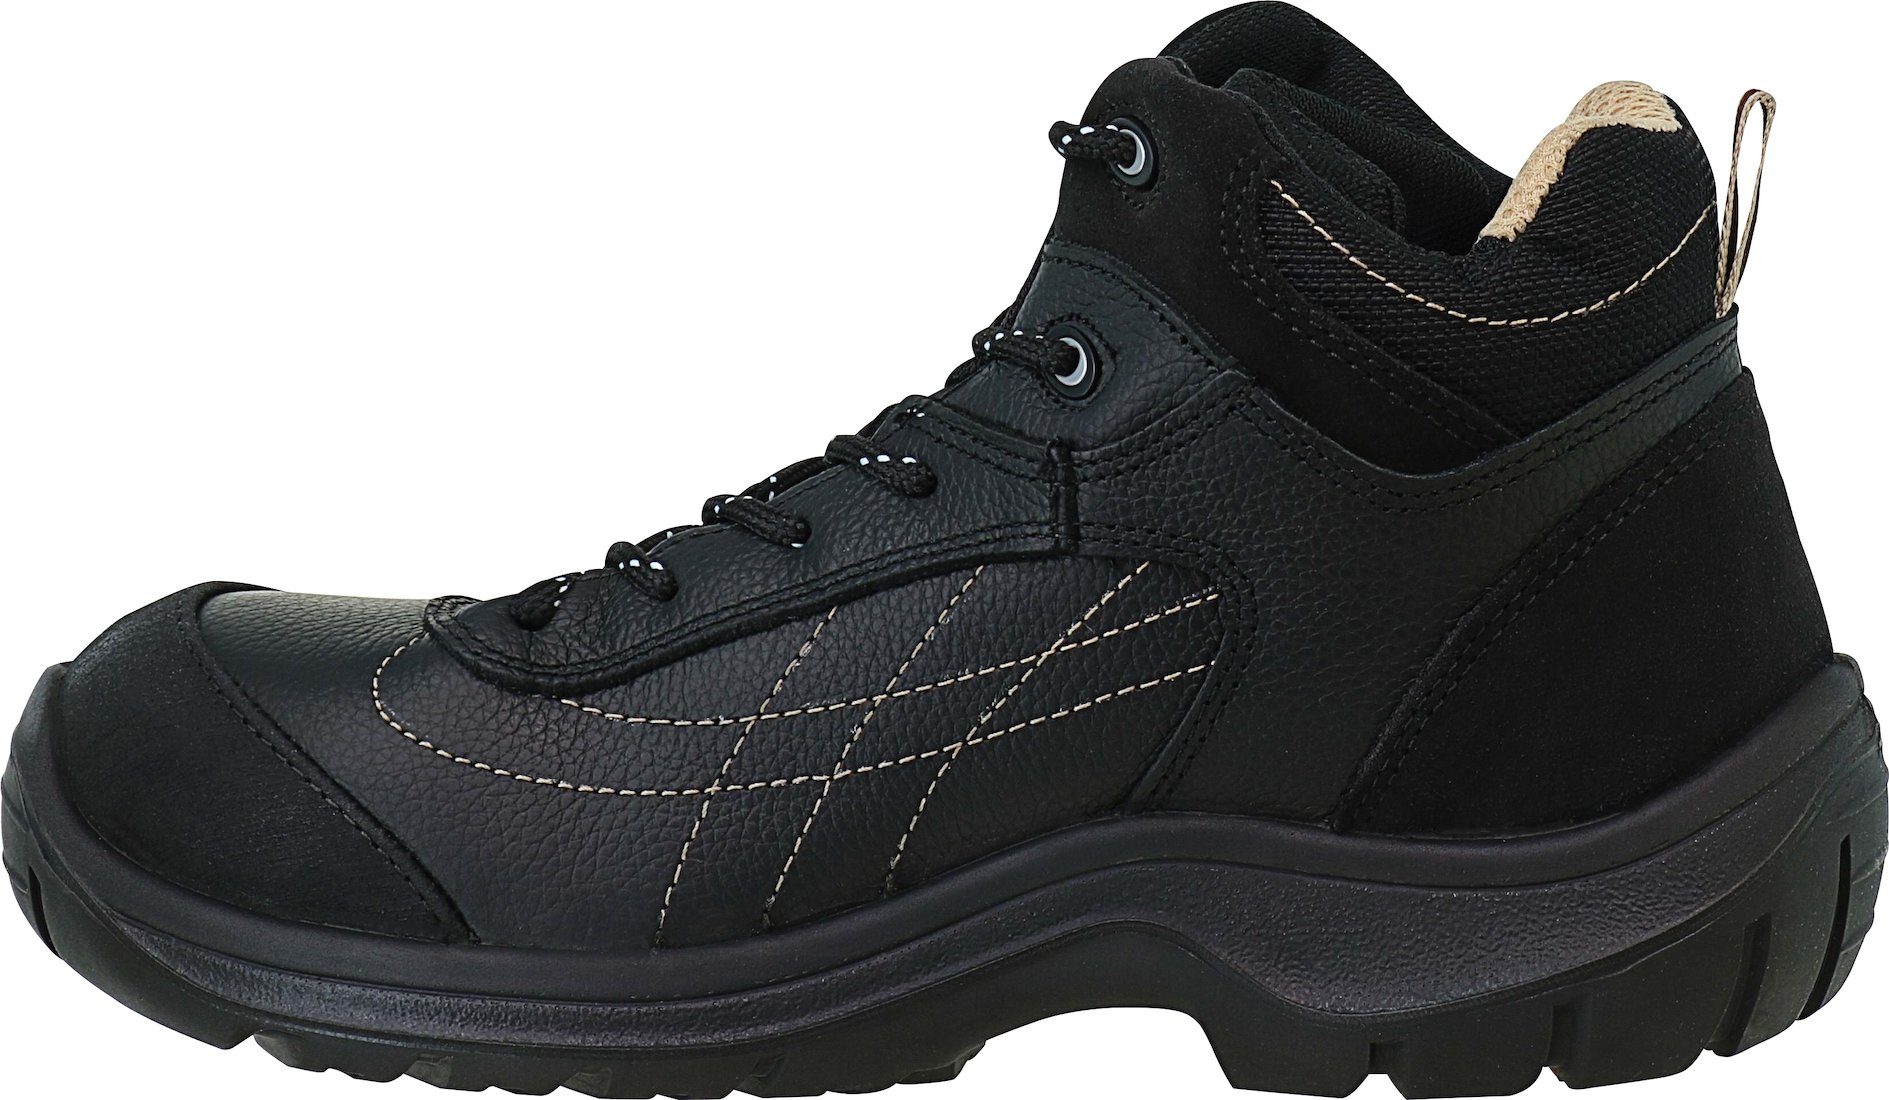 Arbeitsschuhe GAR Garsport® Größe 41 S3 Stiefel, schwarz Sicherheitsstiefel